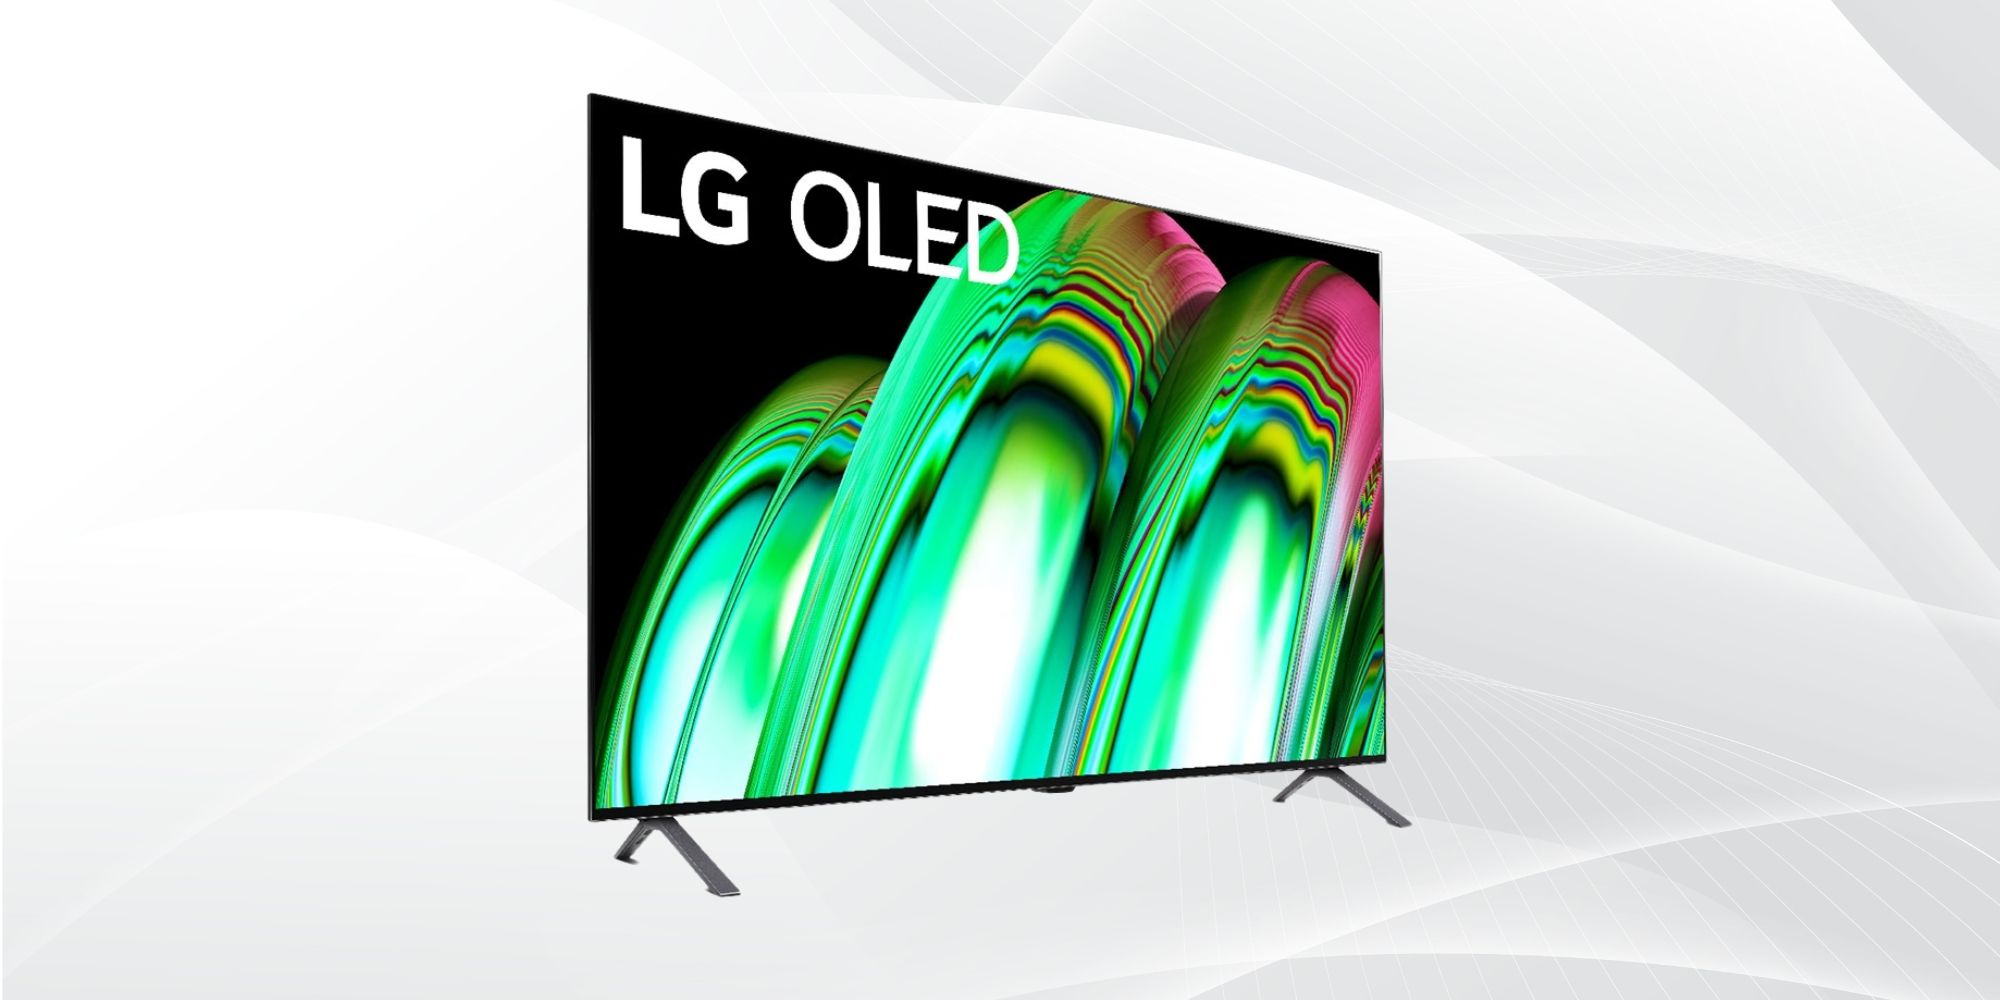 Date prisa y ahorra $1000 en este Smart TV LG A2 OLED de 77”